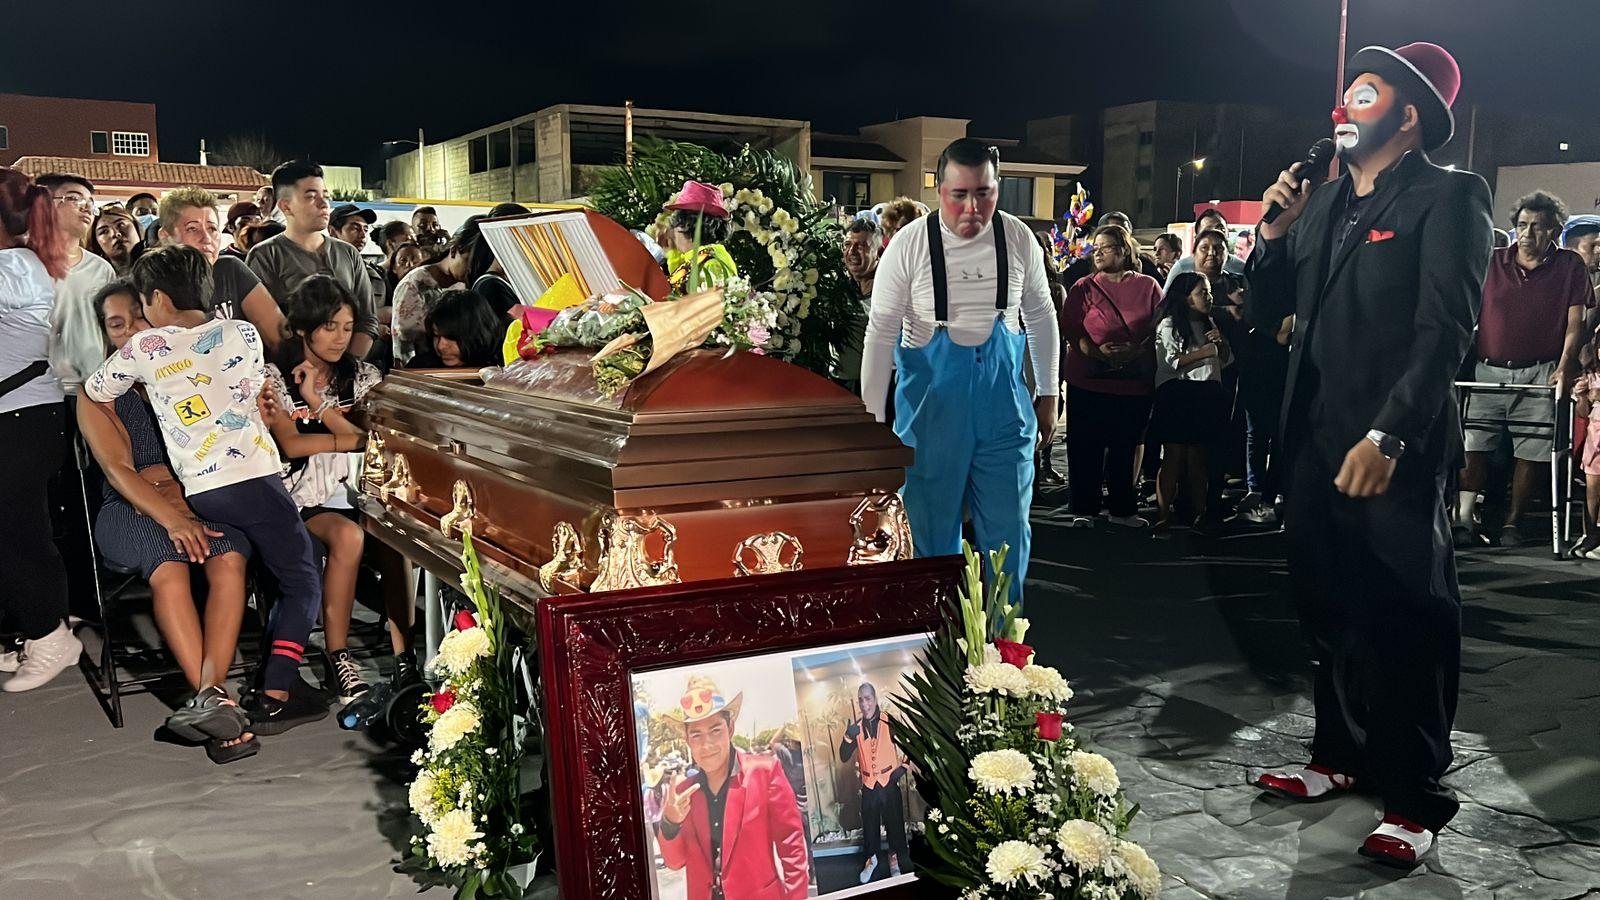 Con un show, payasos de Coatza despidieron a El Teco tras homicidio